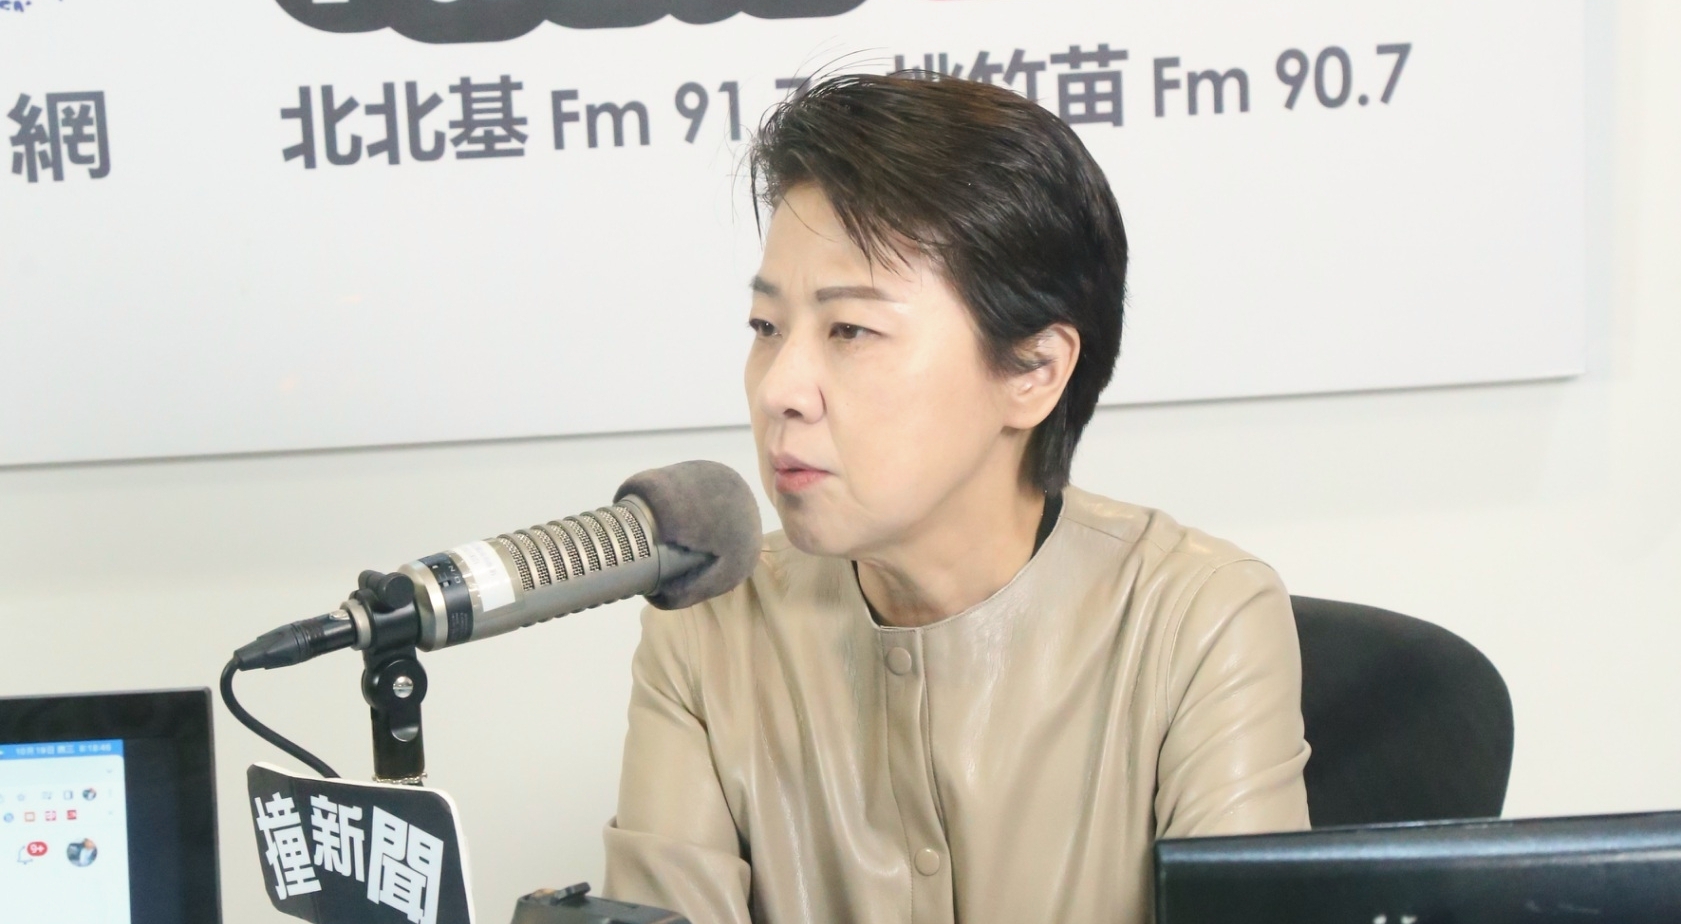 中共飛彈飛越台北上空 黃珊珊談雙城論壇「國民黨發賀電不適合」